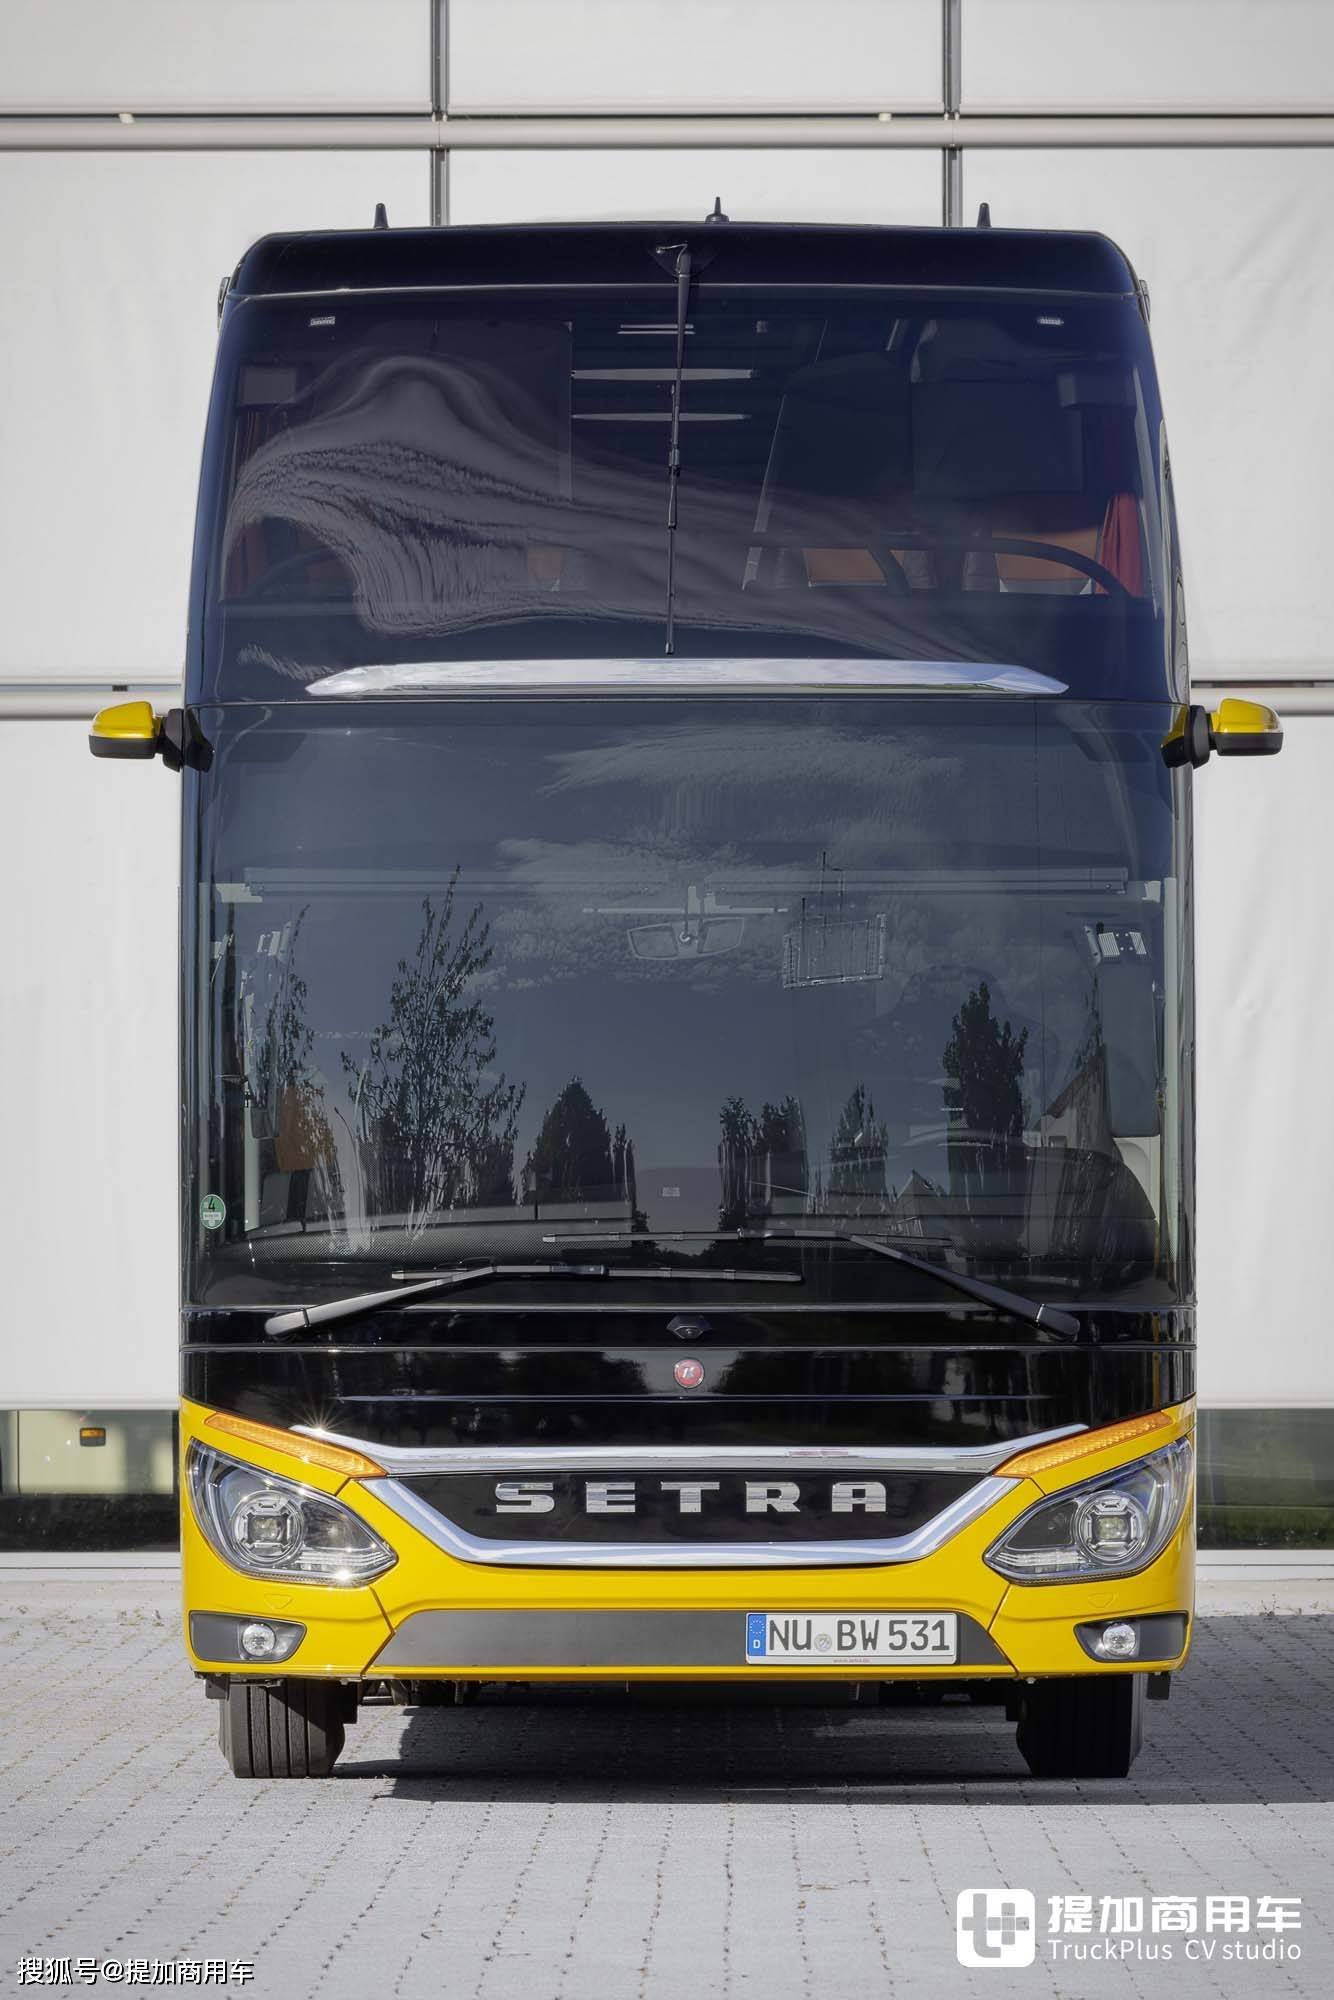 这才是客车,赛特拉s531 dt豪华双层巴士实拍,把客车的豪华演绎到极致